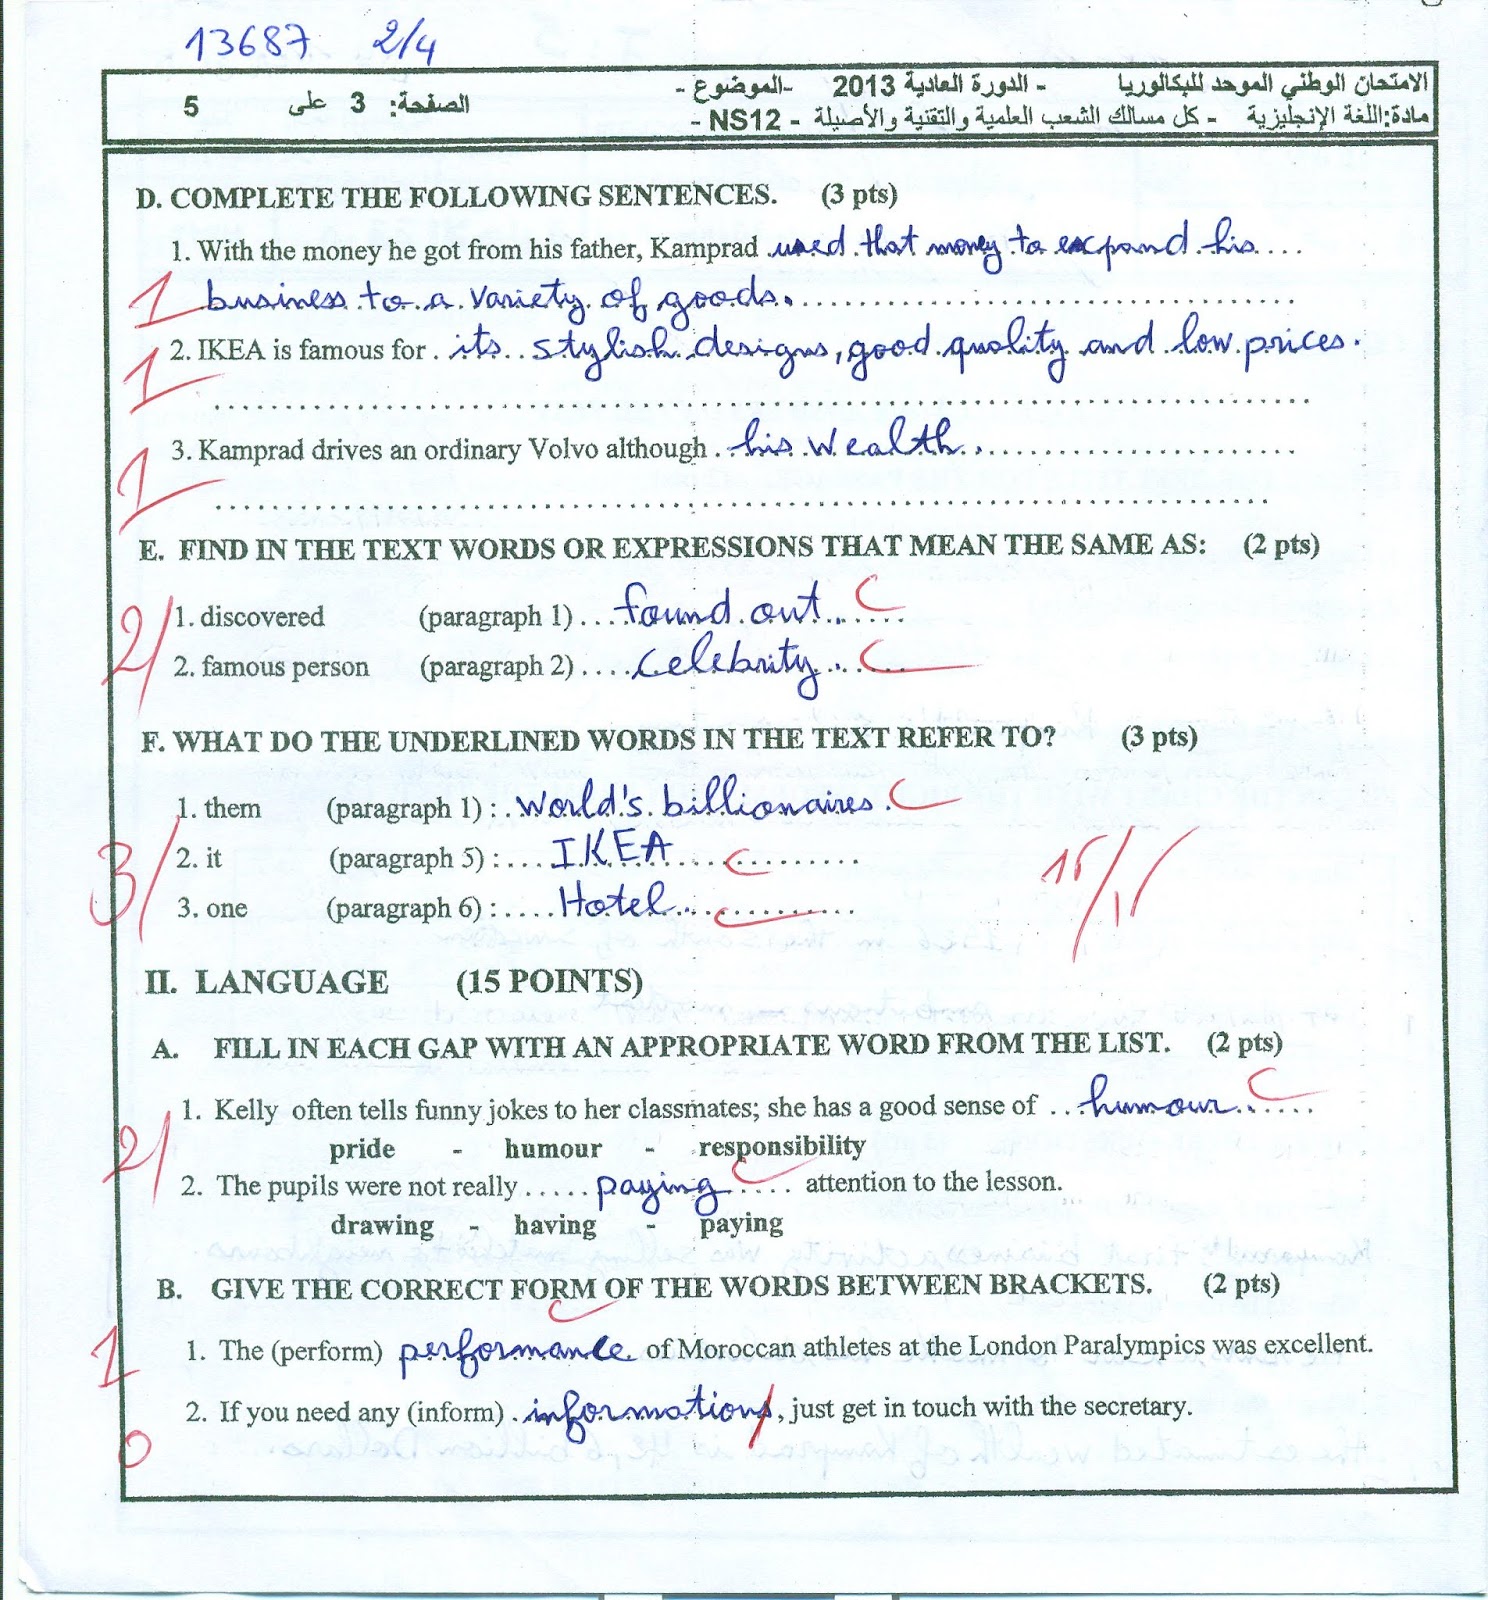 الإنجاز النموذجي (16.50/20)؛ الامتحان الوطني الموحد للباكالوريا، الإنجليزية، مسلك اللغة العربية 2013